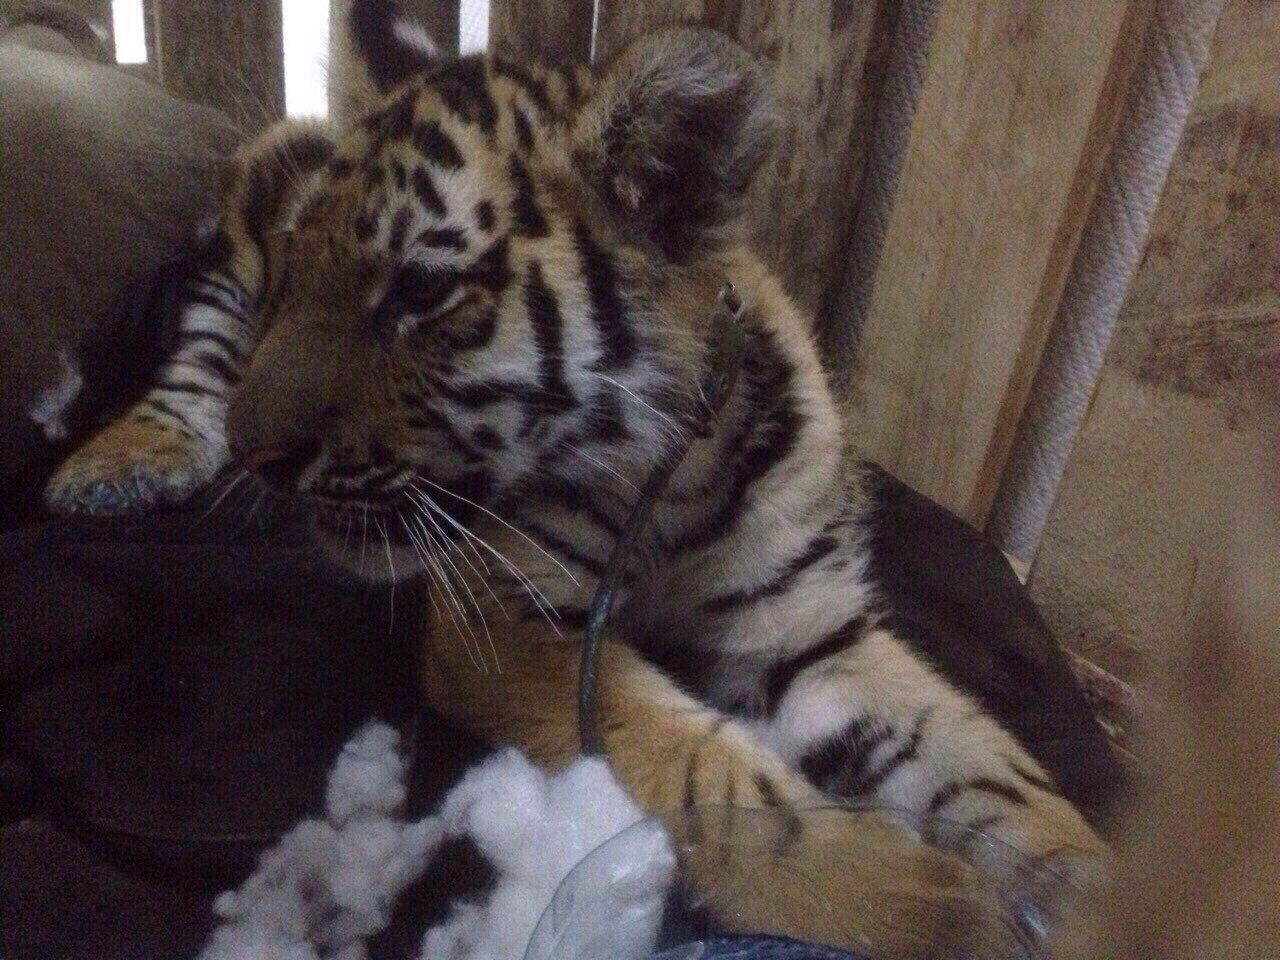 МВД спасло амурского тигренка, забрав его у торговцев в Нижневартовске - 6 октября 2015 года